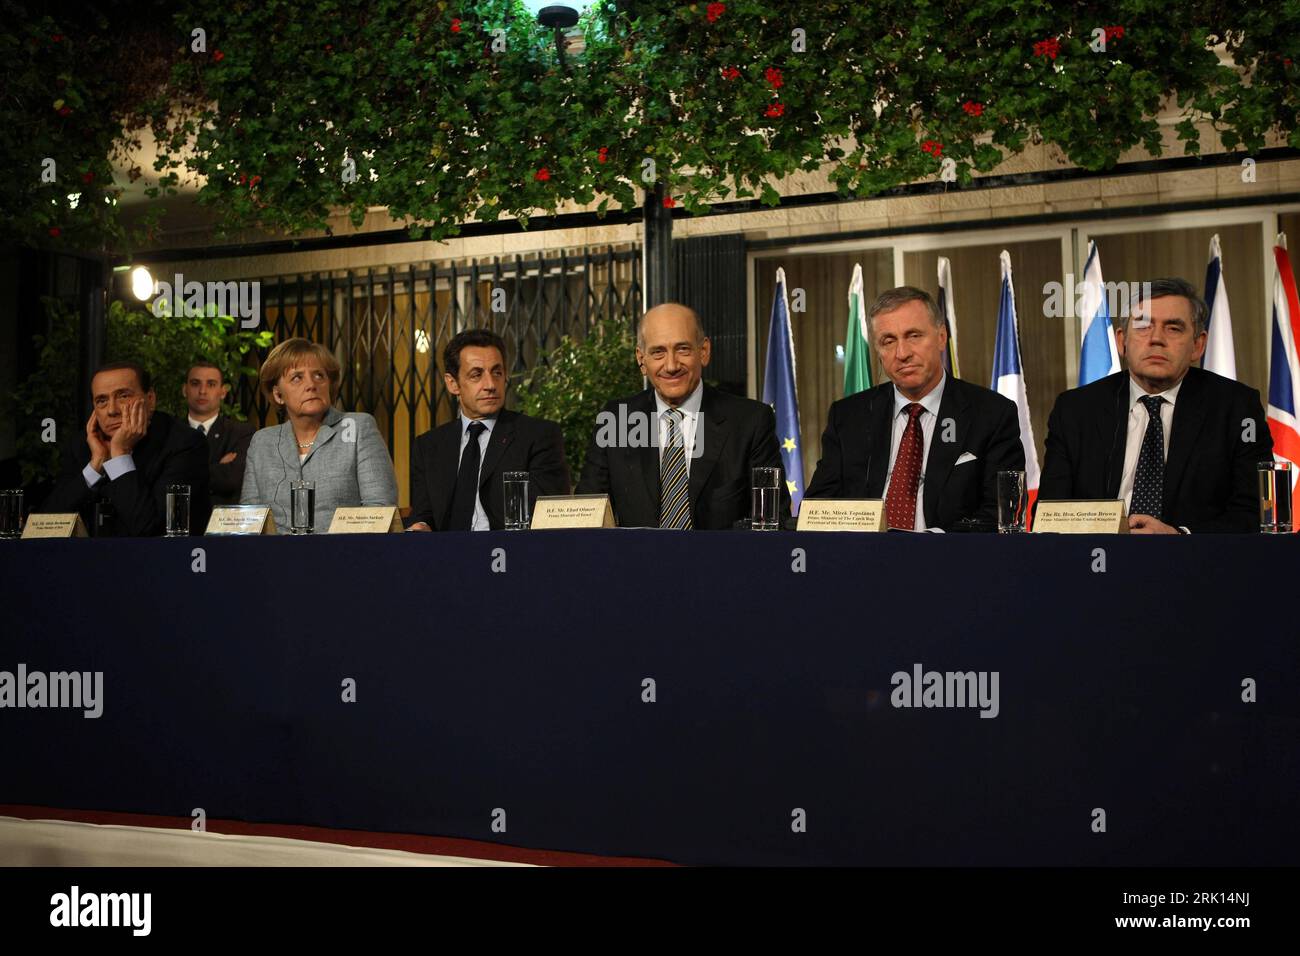 Bildnummer: 52853040  Datum: 18.01.2009  Copyright: imago/Xinhua Premierminister Ehud Olmert (3.v.re., Israel) mit (v.l.n.r.) Silvio Berlusconi, Angela Merkel, Nicolas Sarkozy, Mirek Topolanek und Gordon Brown während einer gemeinsamen Pressekonferenz zum Nahostkonflikt in Jerusalem - PUBLICATIONxNOTxINxCHN, Personen; premiumd, 2009, Jerusalem, Nahostkonflikt, Krieg, Politik, Pressekonferenz , Pressetermin; , quer, Kbdig, Gruppenbild, Randbild, People    Bildnummer 52853040 Date 18 01 2009 Copyright Imago XINHUA Prime Minister Ehud Olmert 3 V right Israel with V l n r Silvio Berlusconi Angela Stock Photo